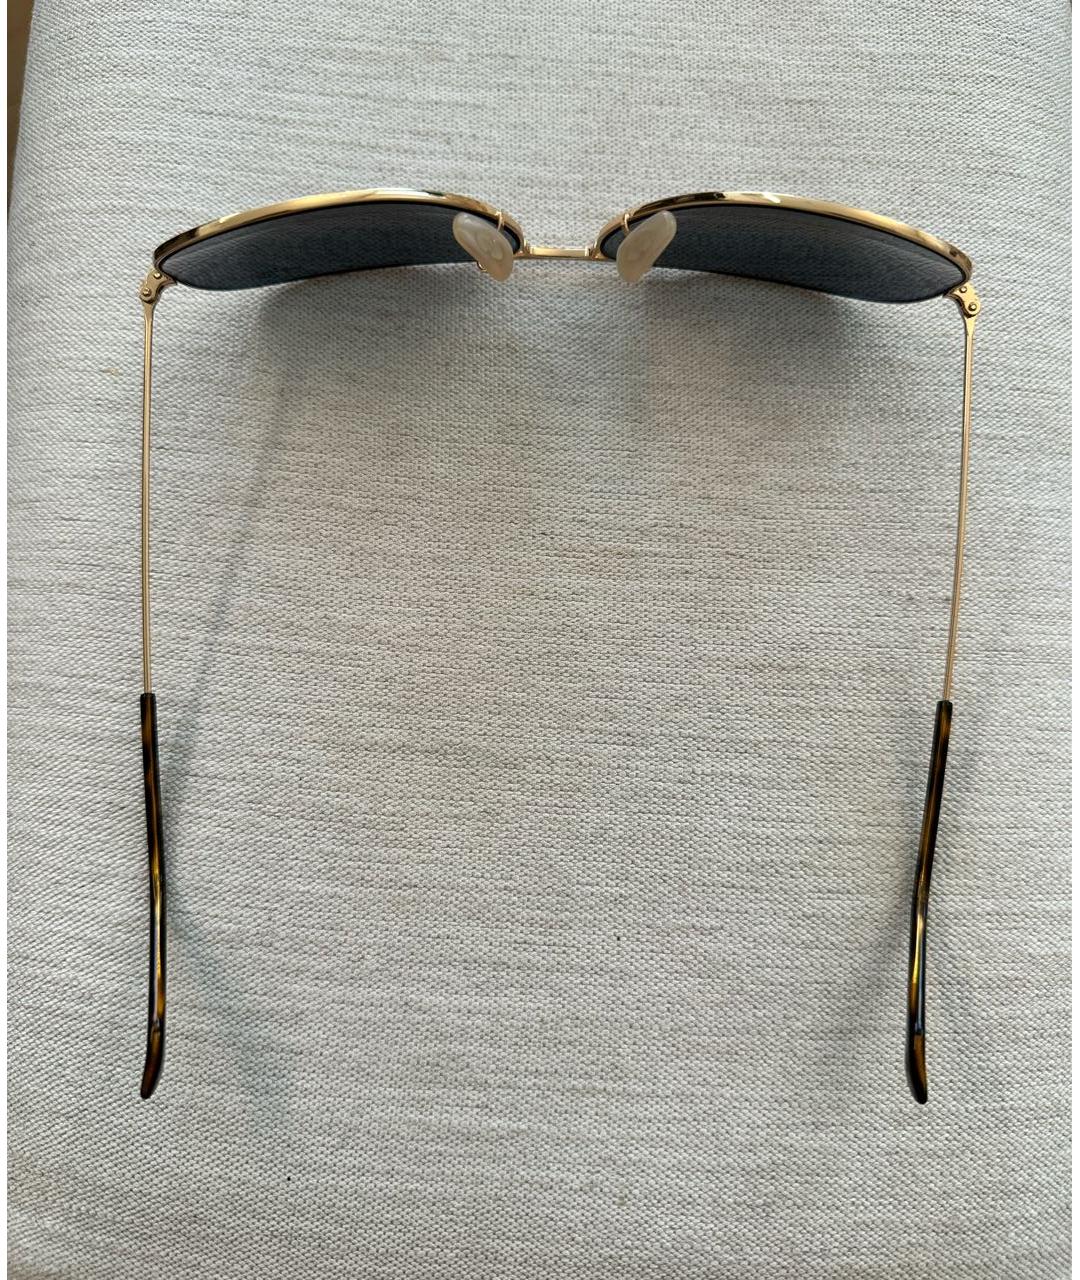 RAY BAN Золотые металлические солнцезащитные очки, фото 6